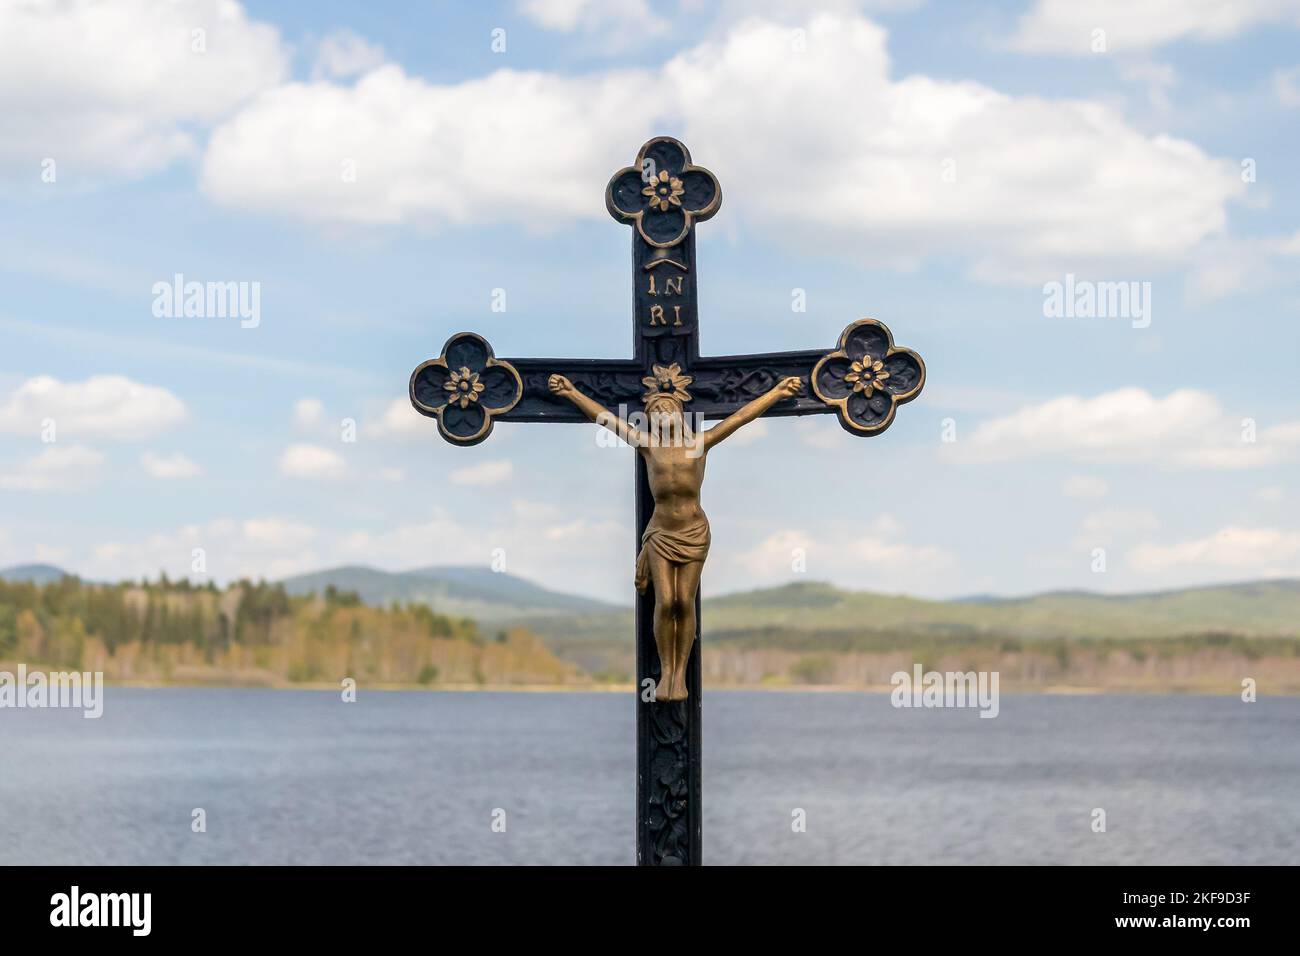 Crucifix - statue de Jésus-Christ sur une croix, dans le paysage d'arrière-plan avec l'eau, les collines et le ciel bleu avec des nuages Banque D'Images